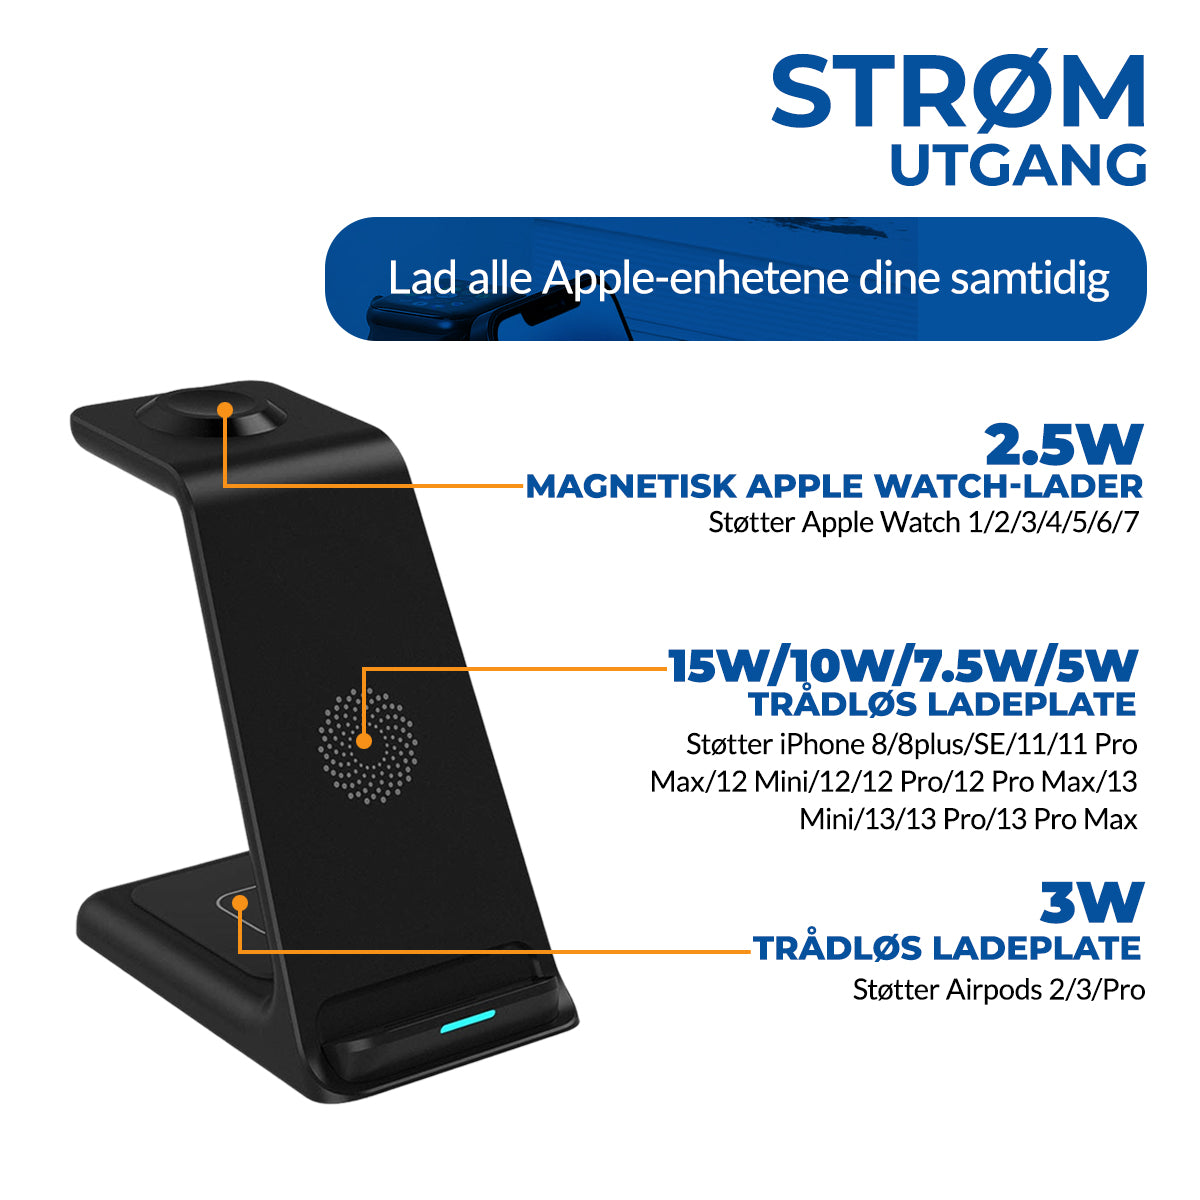 SuperCharger™ - Trådløs Ladestasjon for Apple-enheter